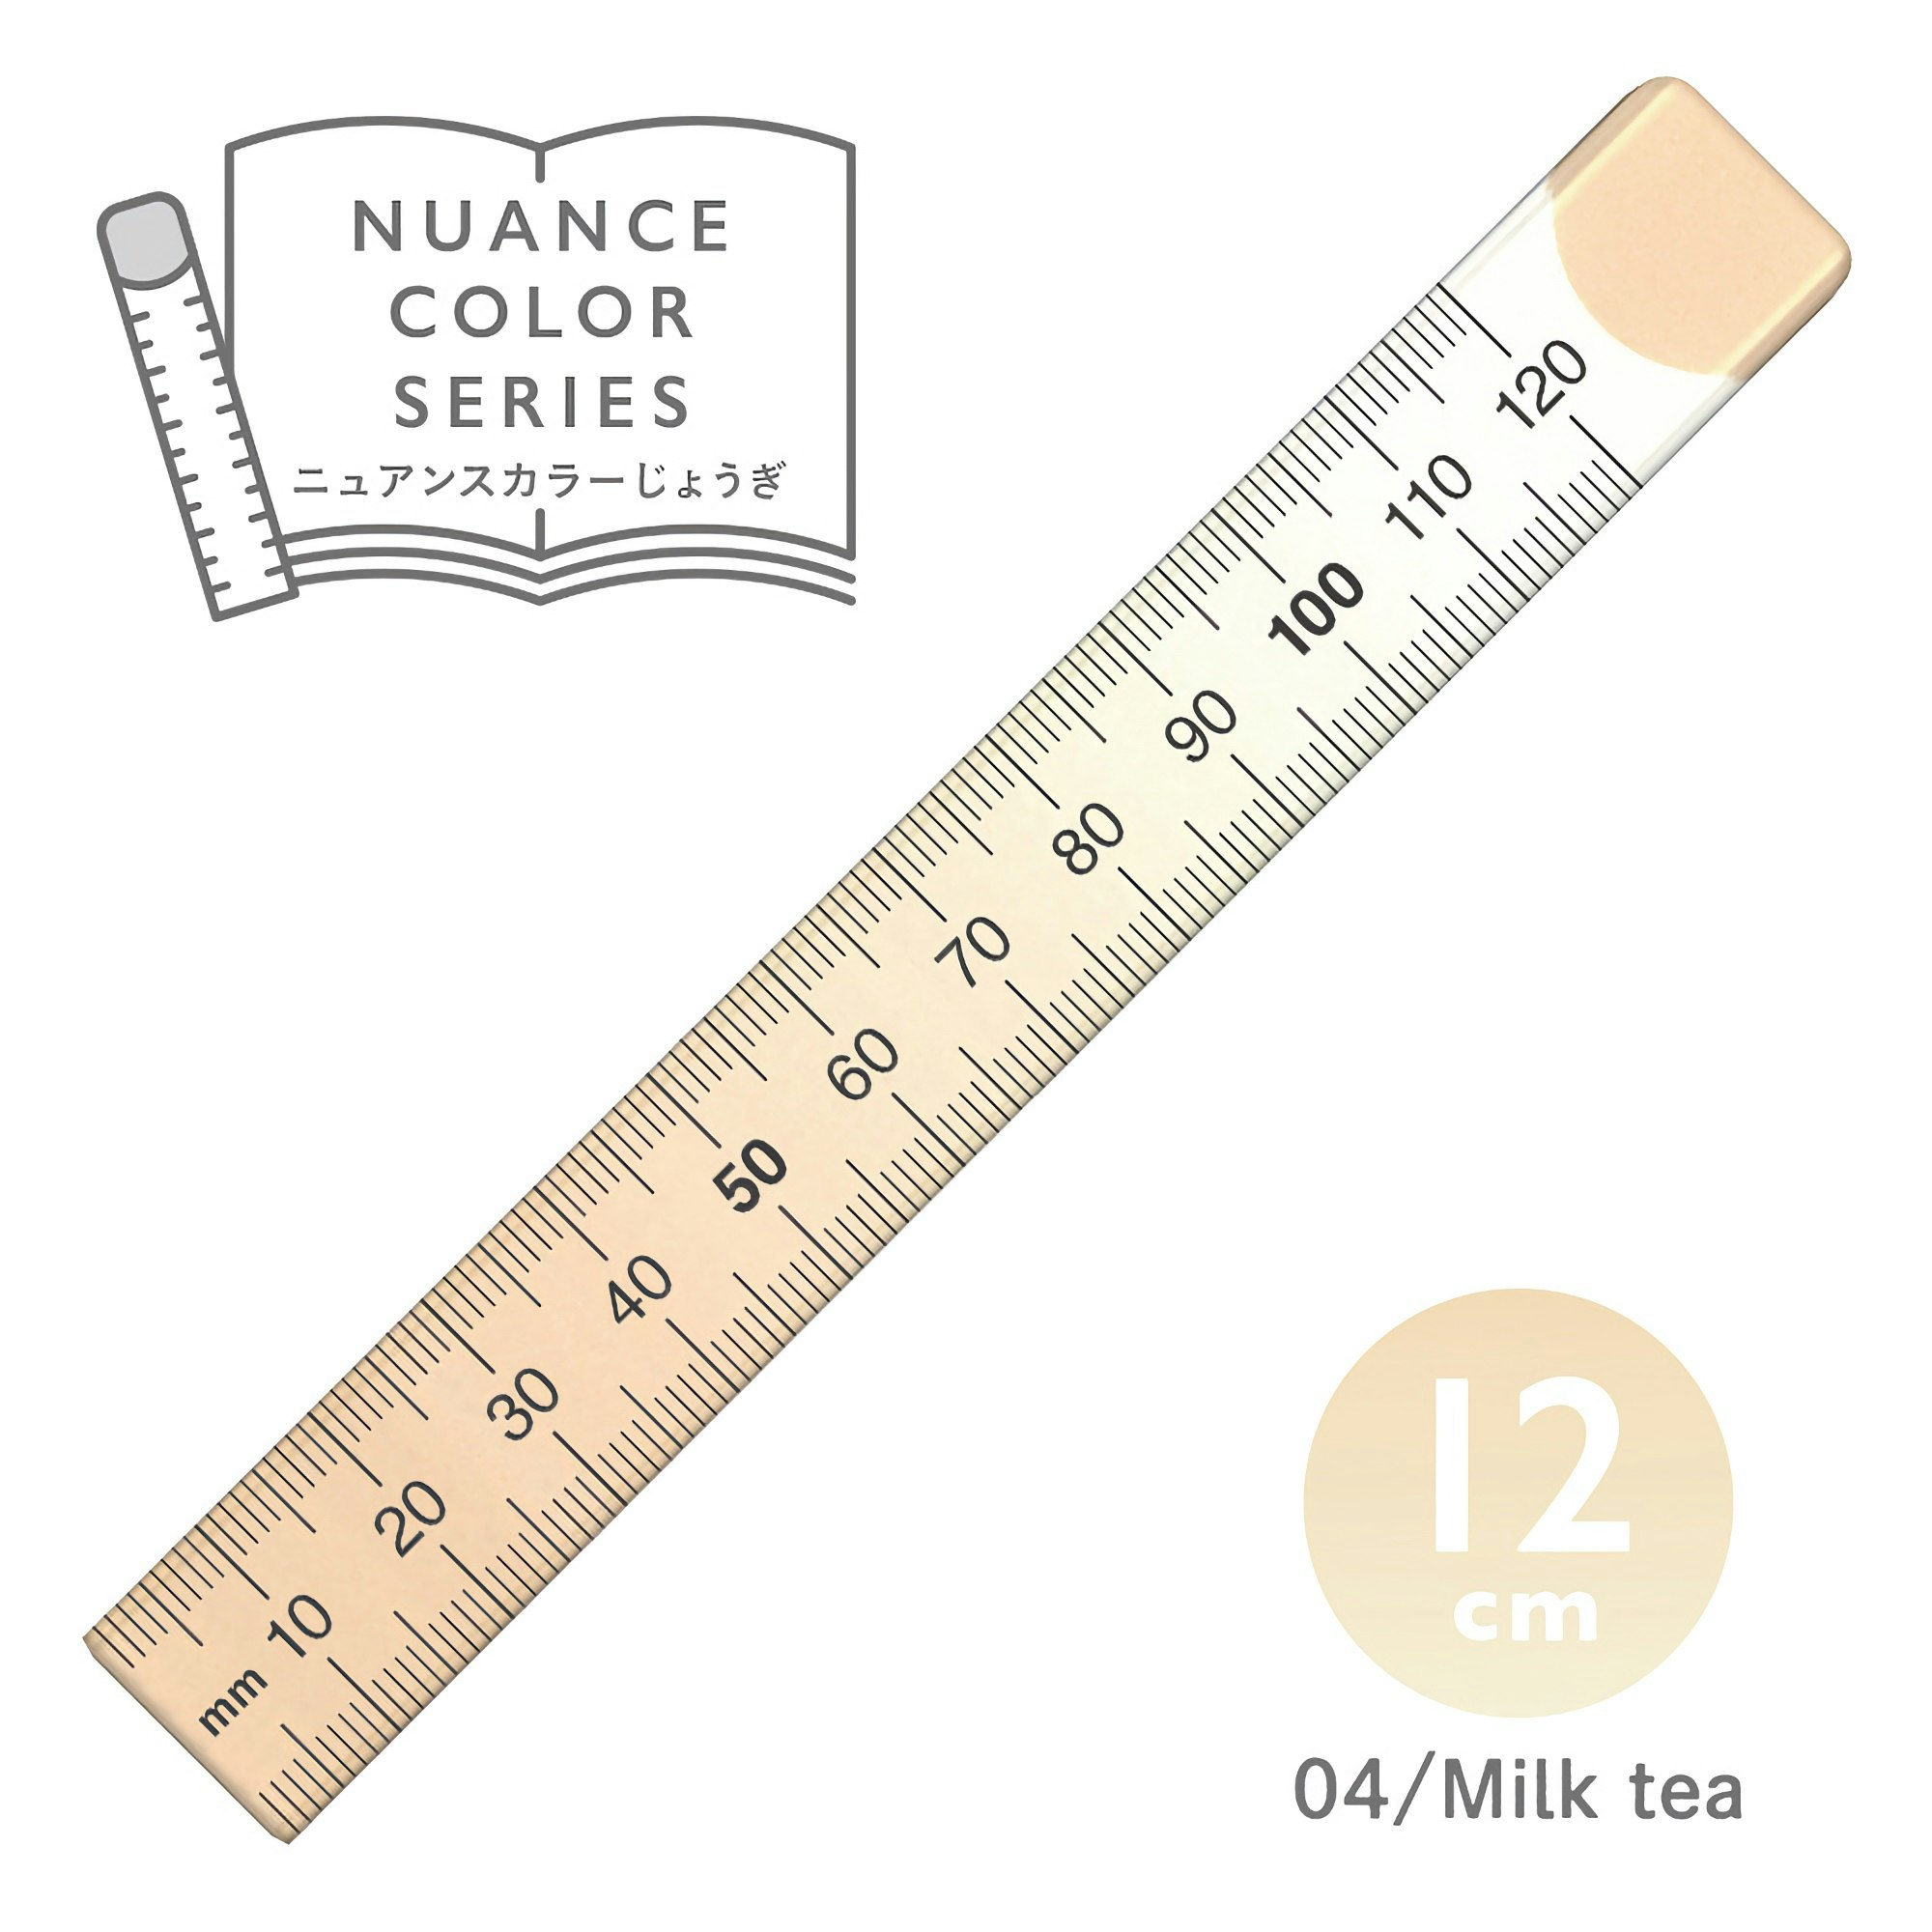 Kyoei Orions Nuance Color Ruler 12 cm Milk Tea